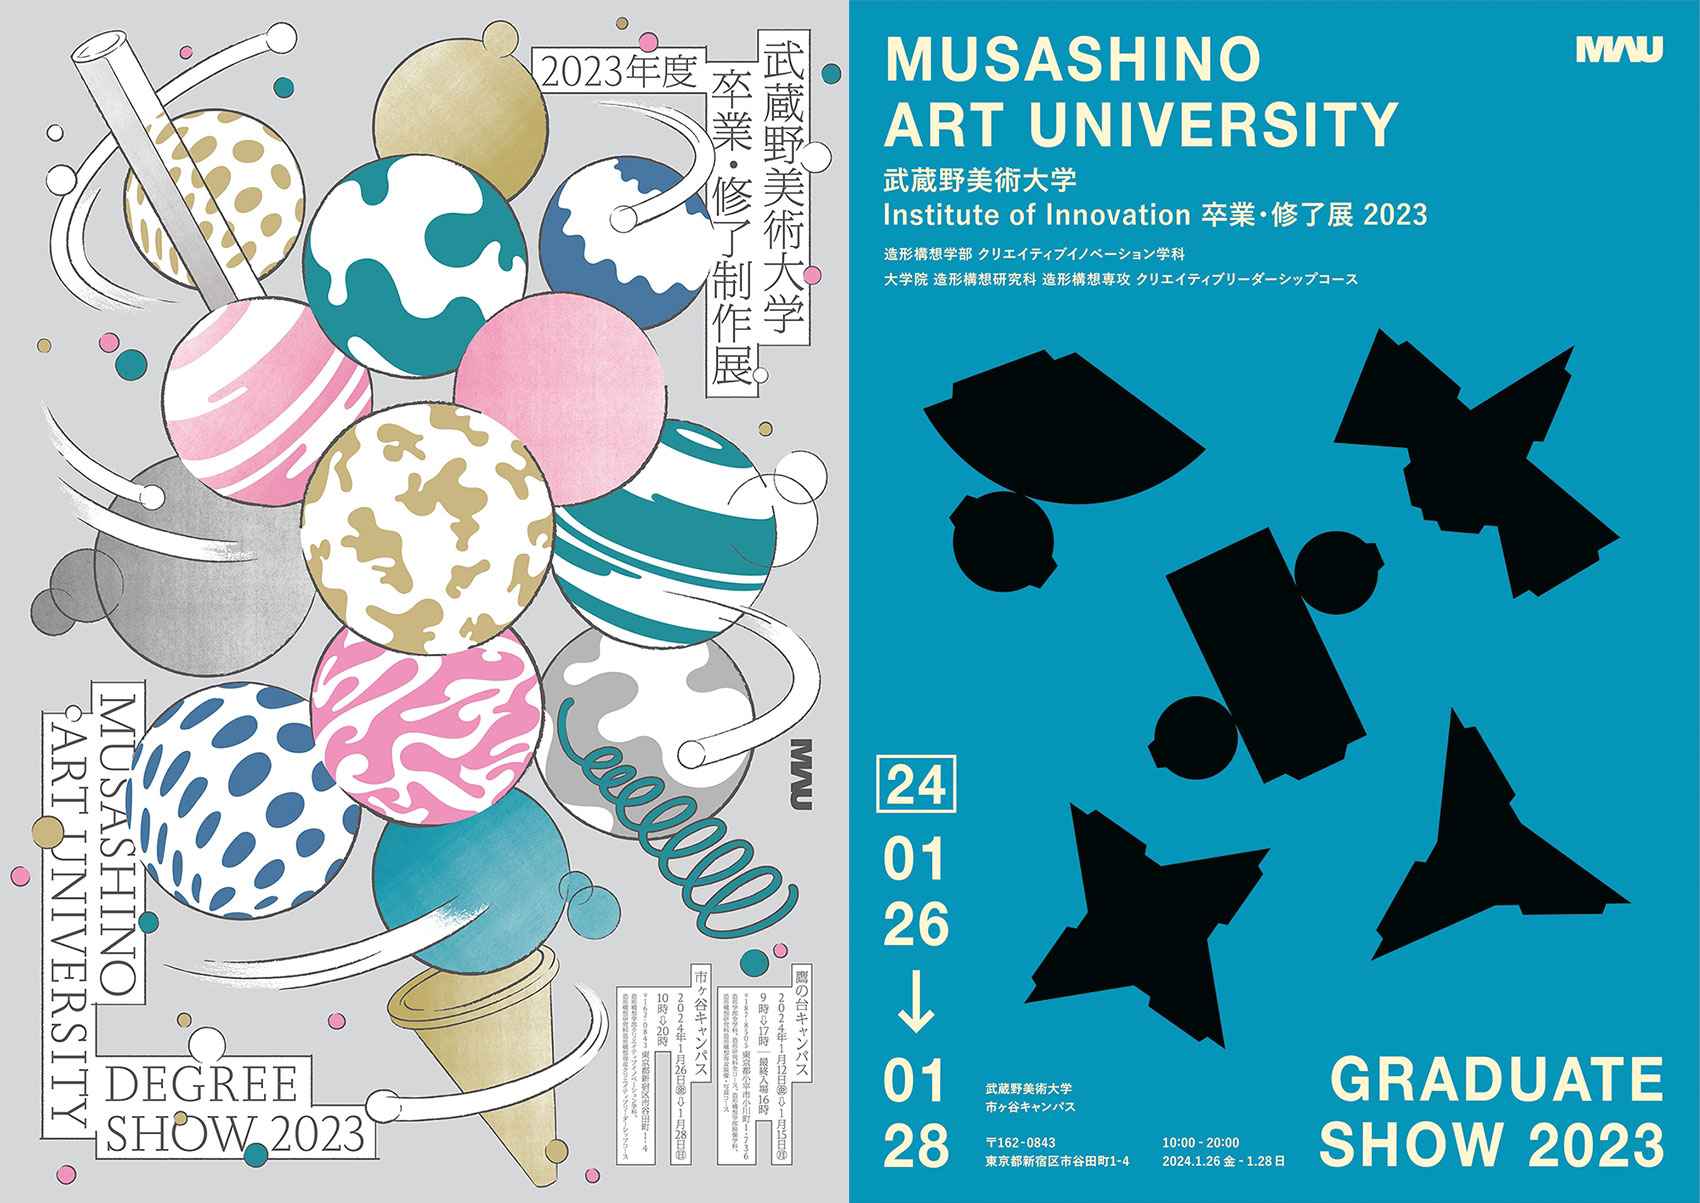 2023年度 武蔵野美術⼤学 卒業・修了制作展 メインビジュアル